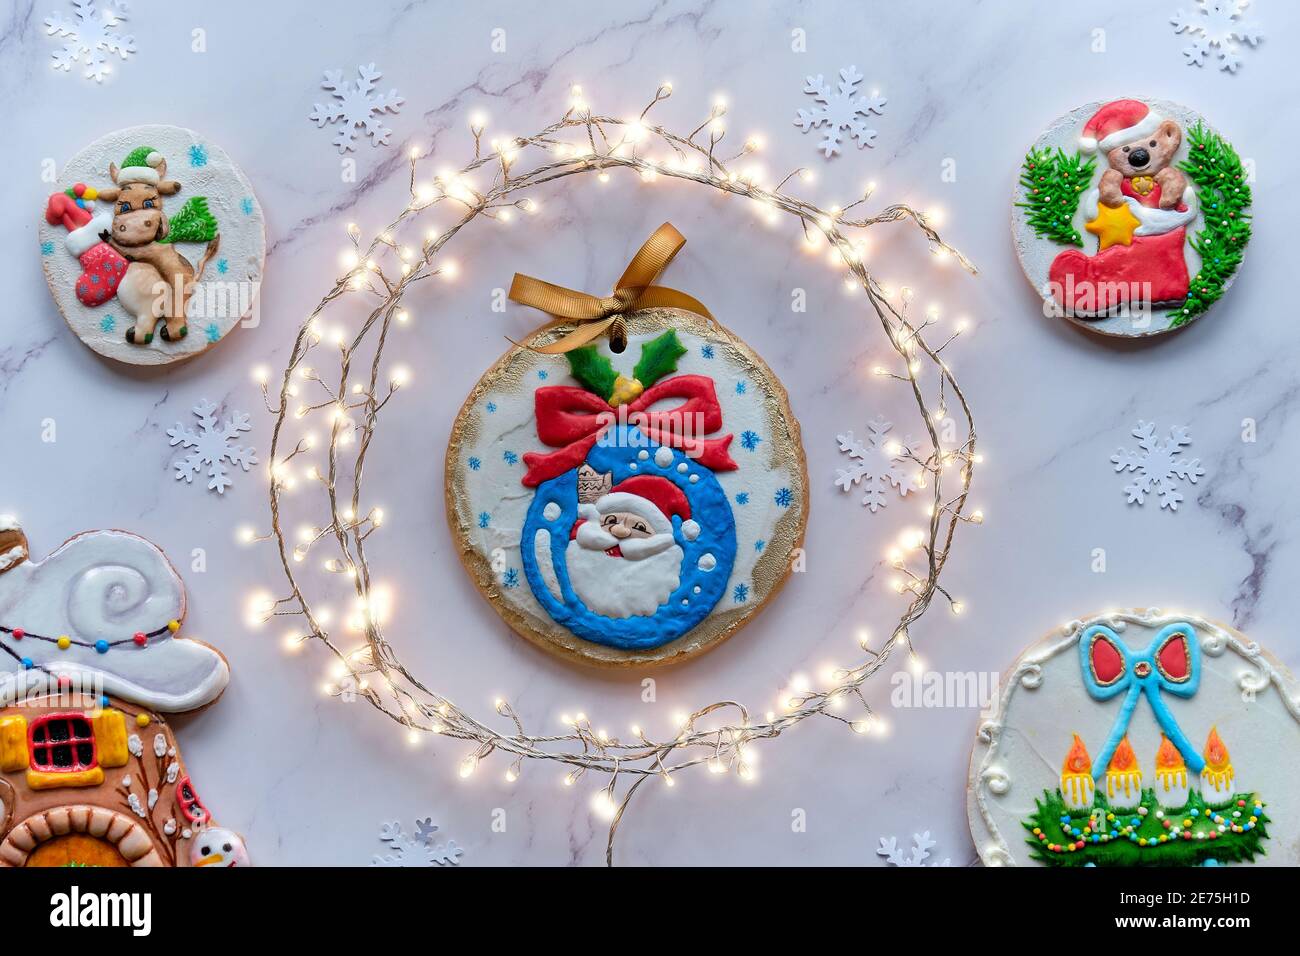 Dekorierter Lebkuchen mit verschiedenen Motiven, Sortiment von leckeren traditionellen Kindergeschenken für Weihnachten. Weihnachten Draufsicht mit festlicher Girlande im Kreis Stockfoto